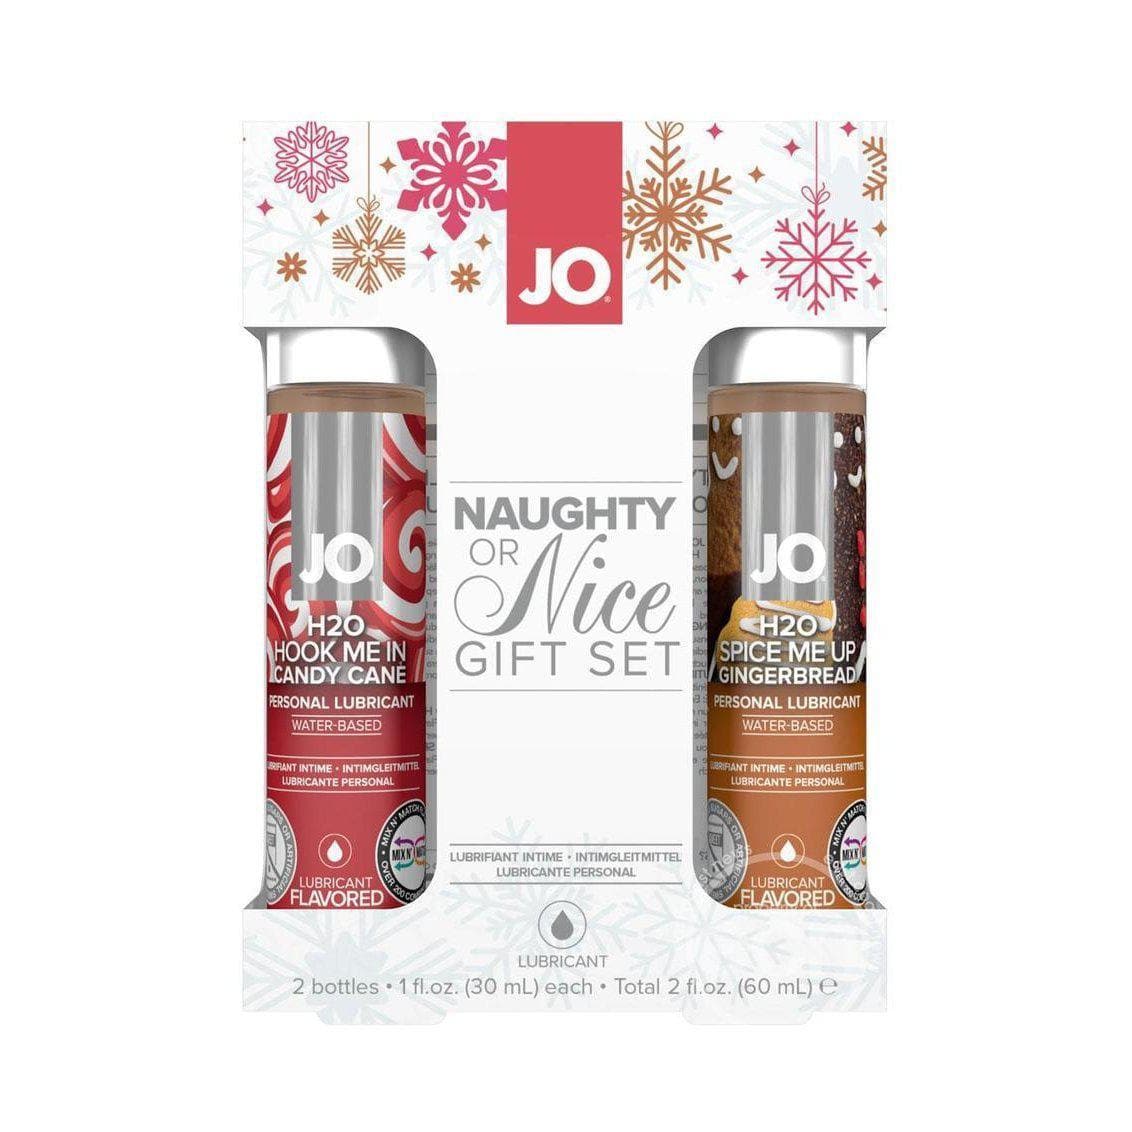 Jo Naughty & Nice Gift Set - Romantic Blessings